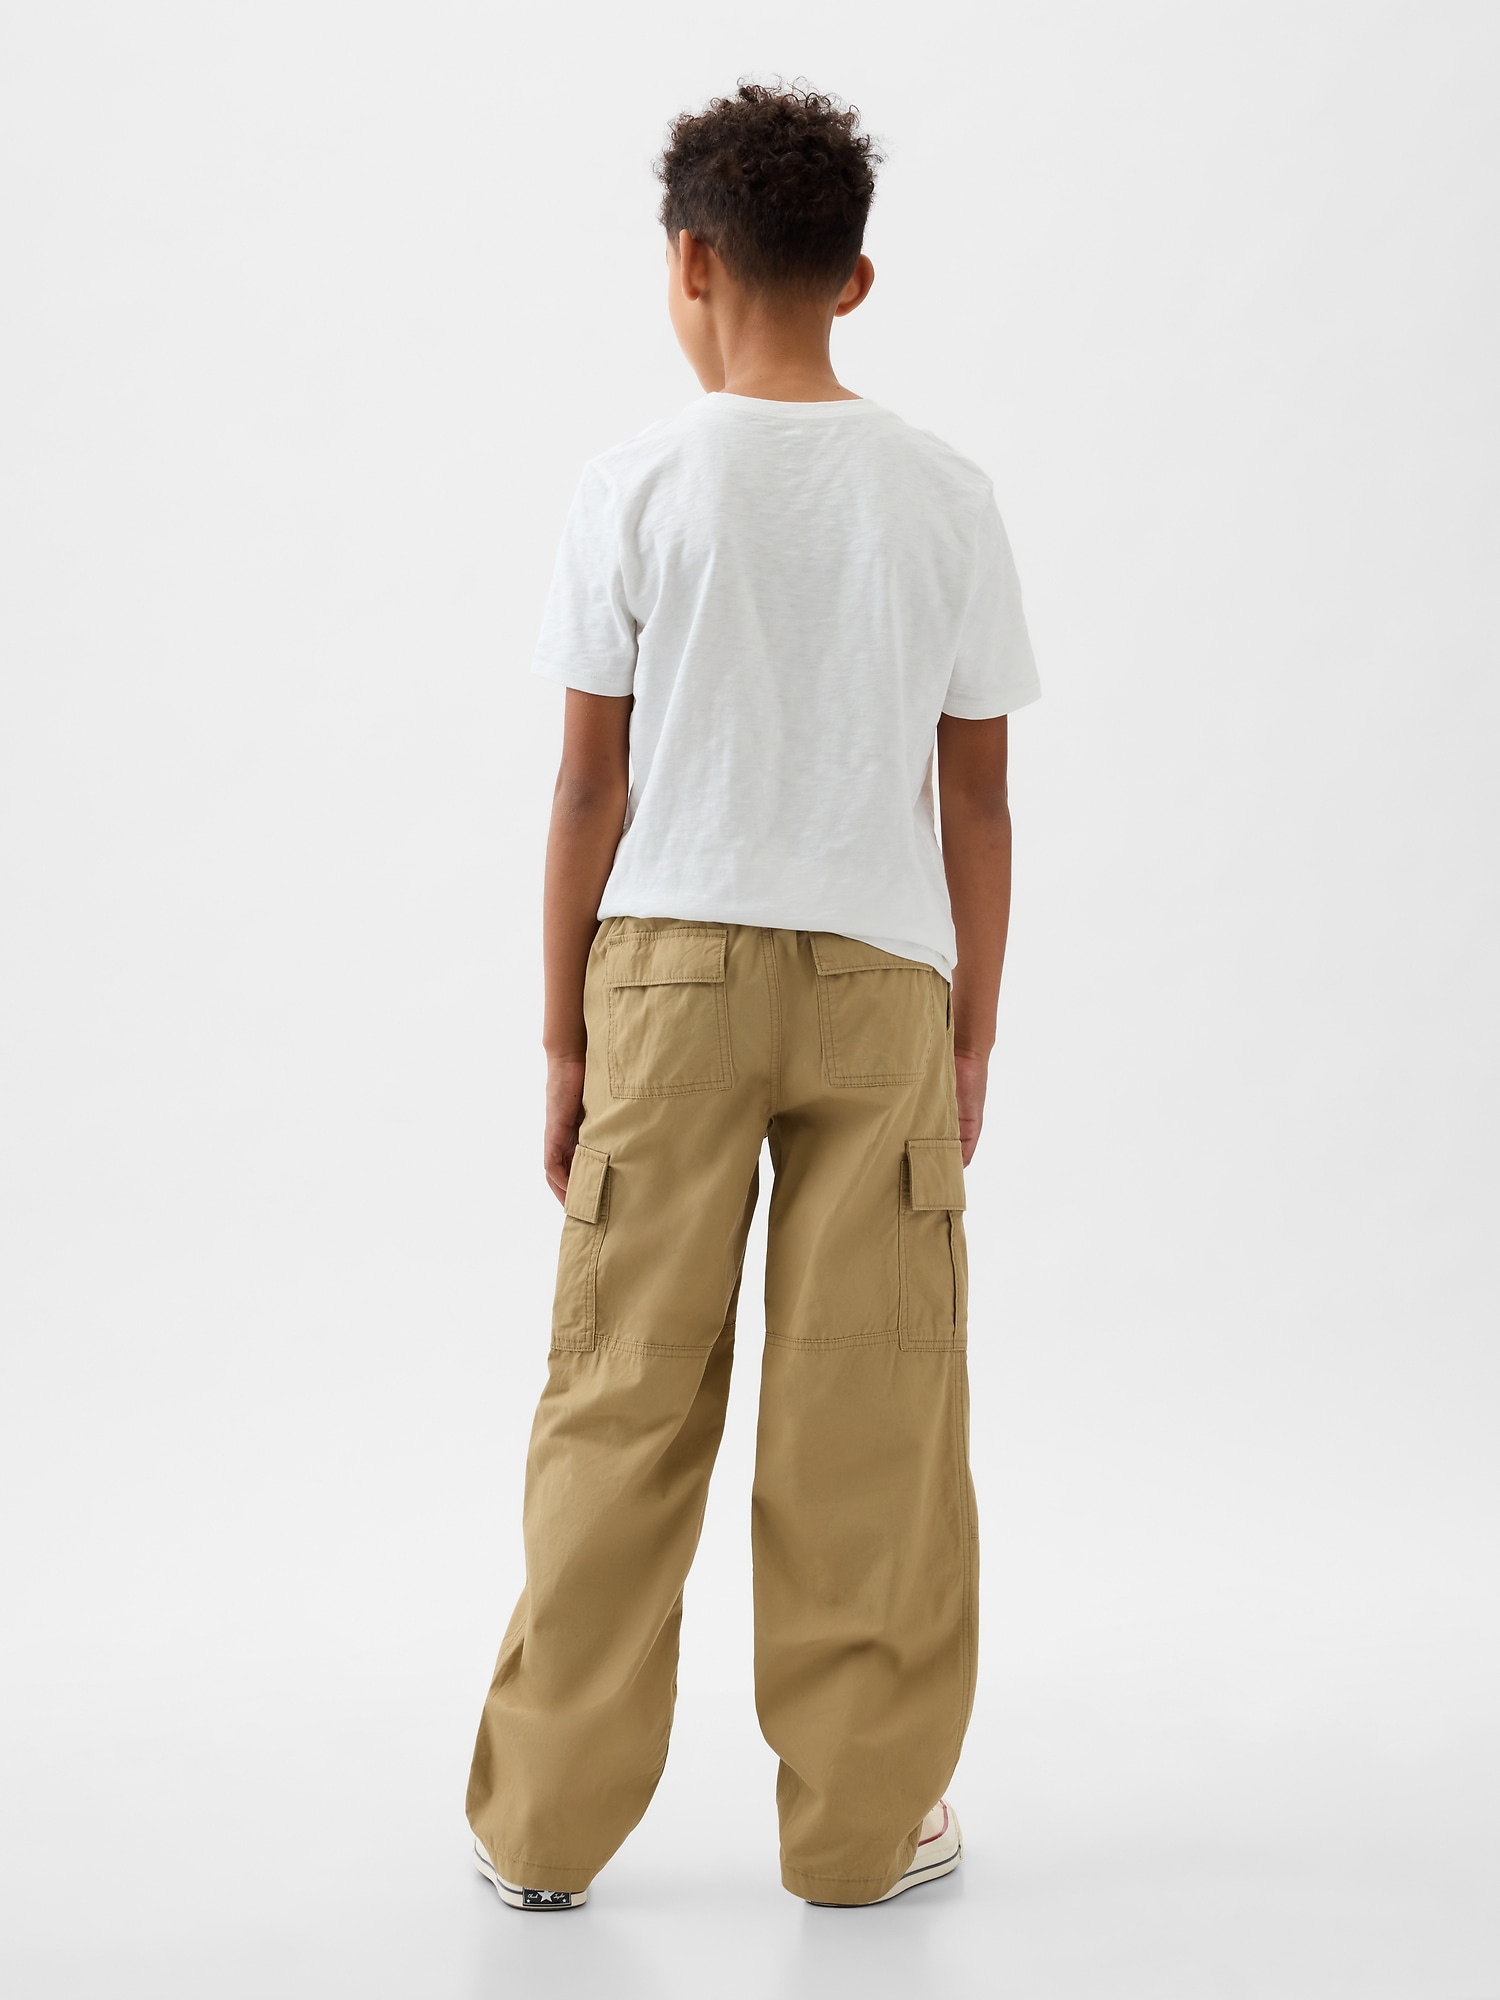 Cat & Jack Boys Black Knit Cargo Pants 4T – Noiram Kids Boutique